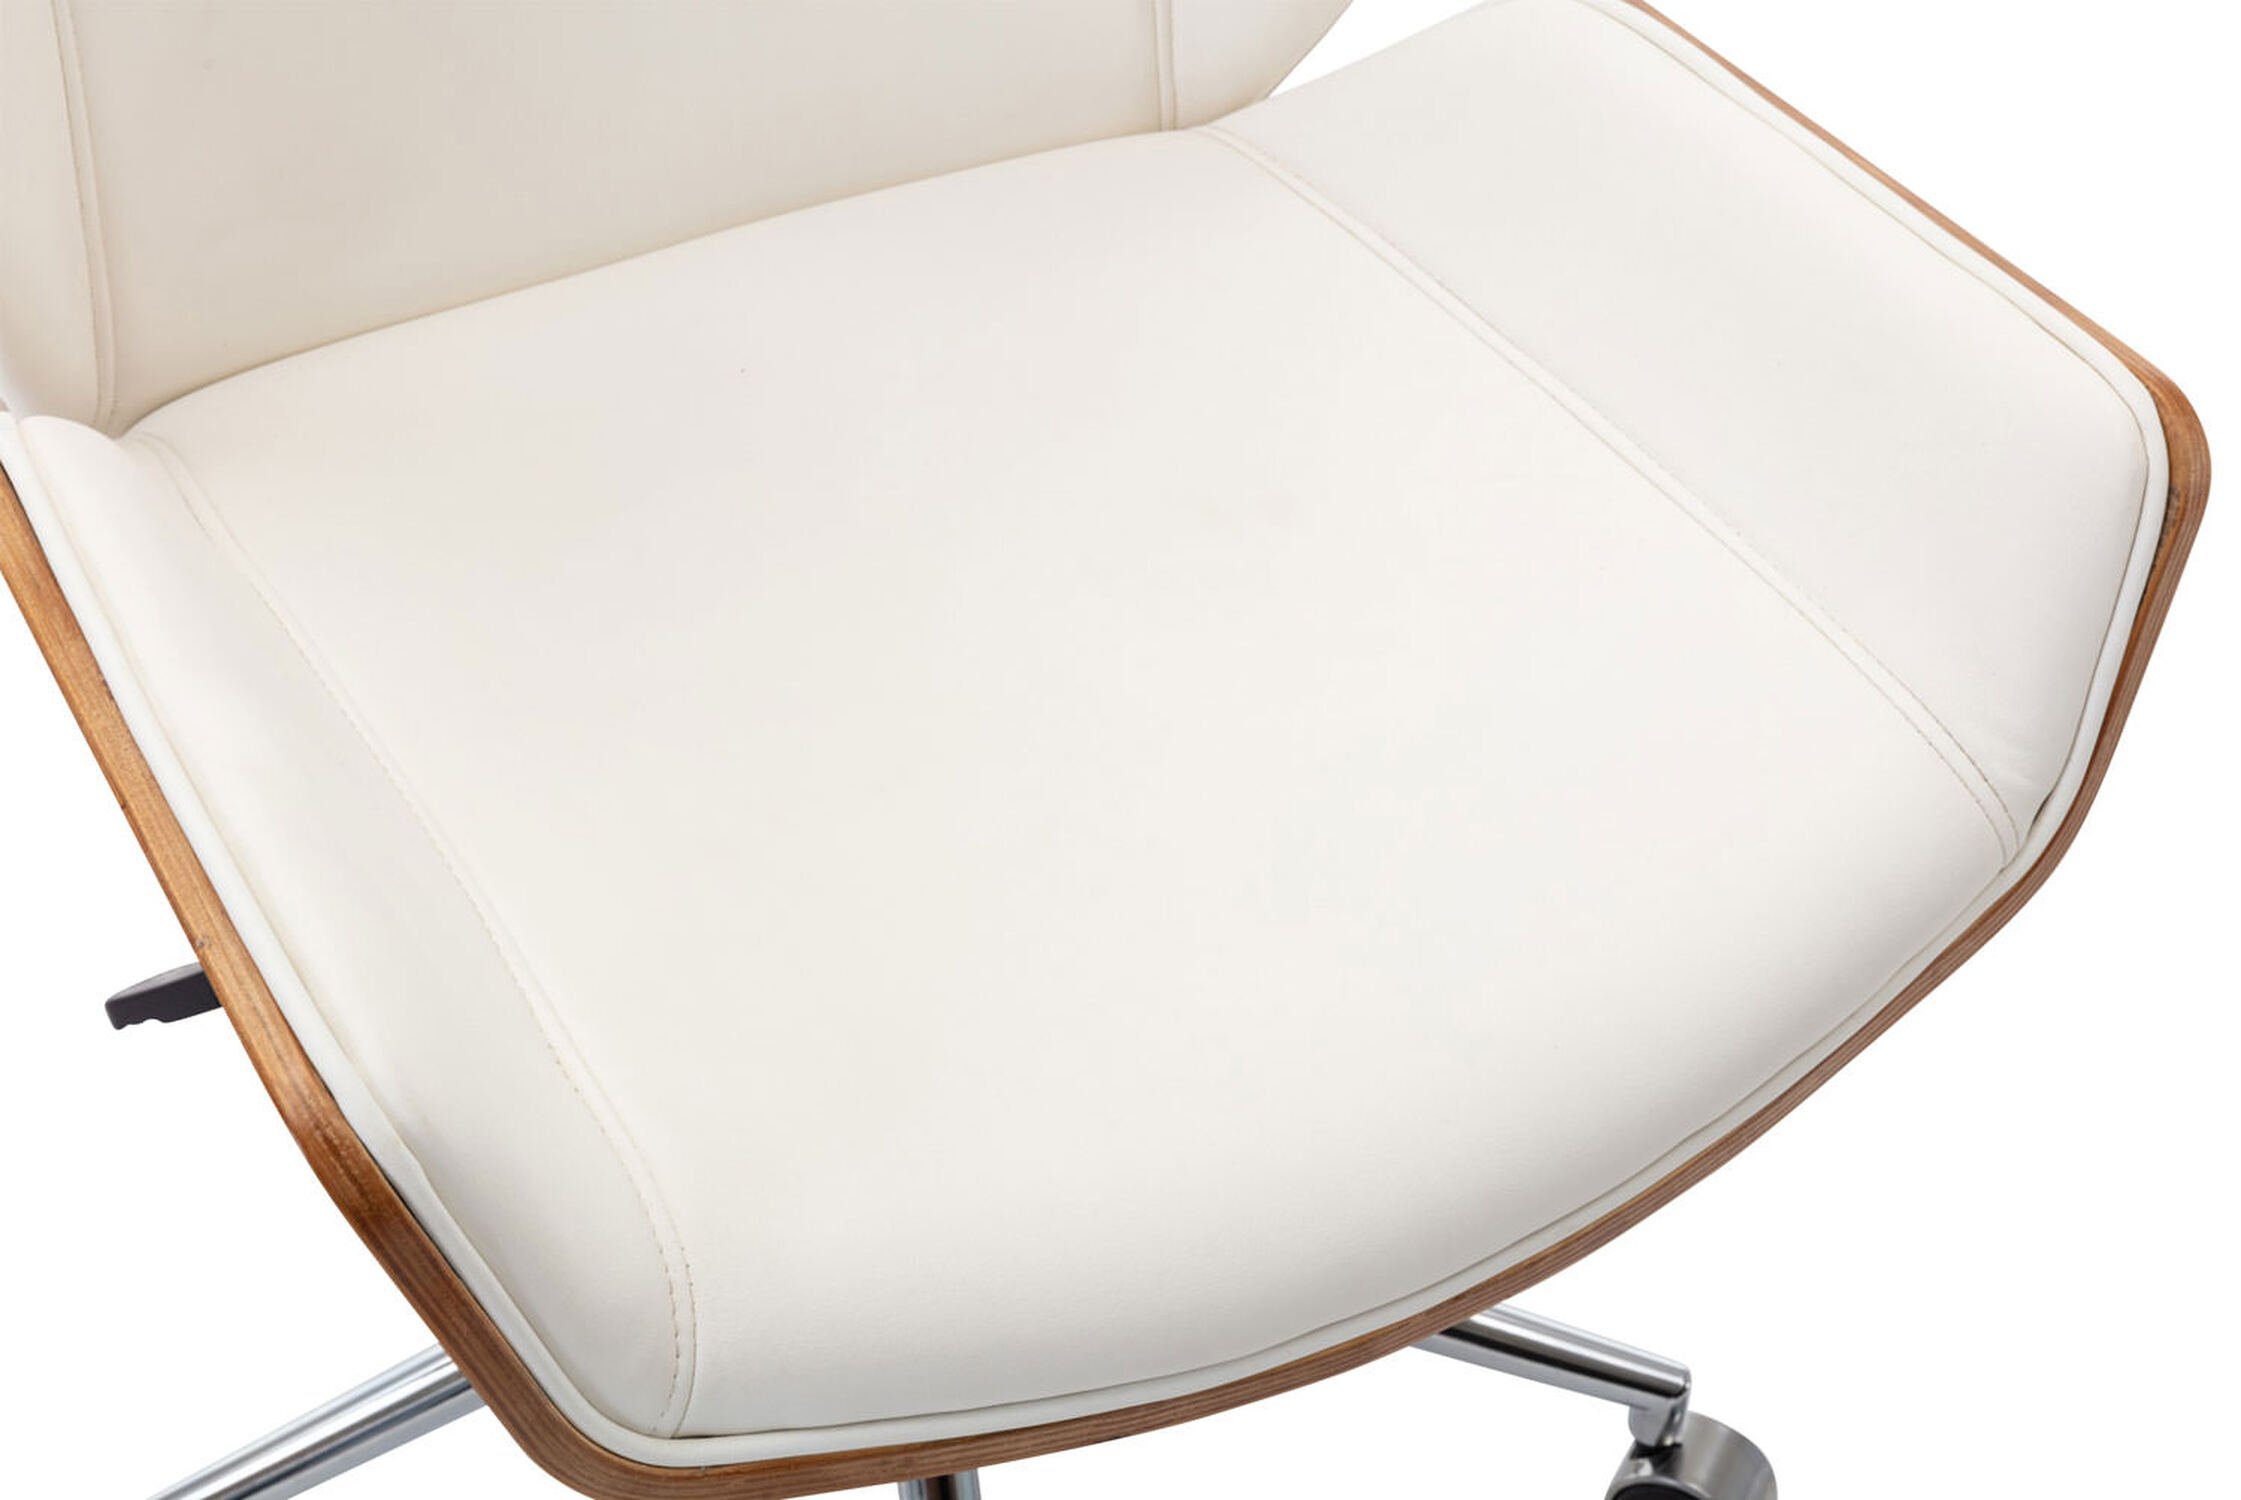 ergonomisch - Kunstleder Sitzfläche: (Schreibtischstuhl, Bredow Chefsessel, Bürostuhl bequemer Metall Rückenlehne Drehstuhl, walnuss/weiß Gamingstuhl), chrom geformter Gestell: TPFLiving mit